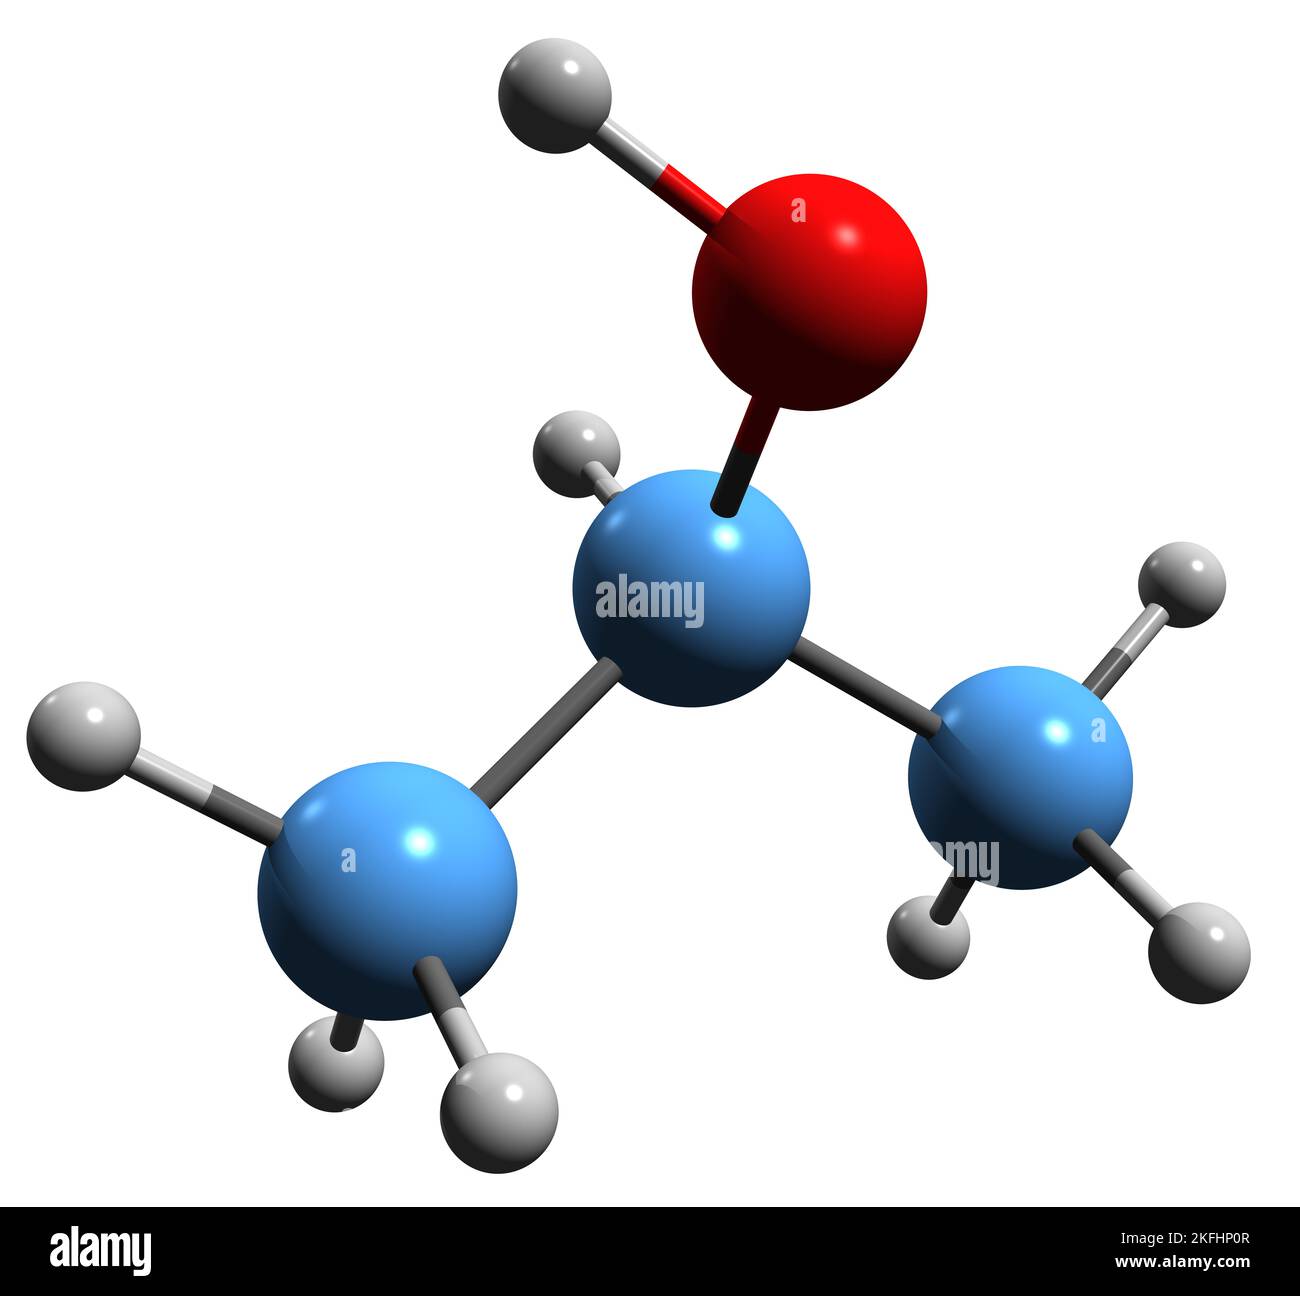 3D image de la formule squelettique à l'alcool isopropylique - structure chimique moléculaire du 2-Propanol isolé sur fond blanc Banque D'Images